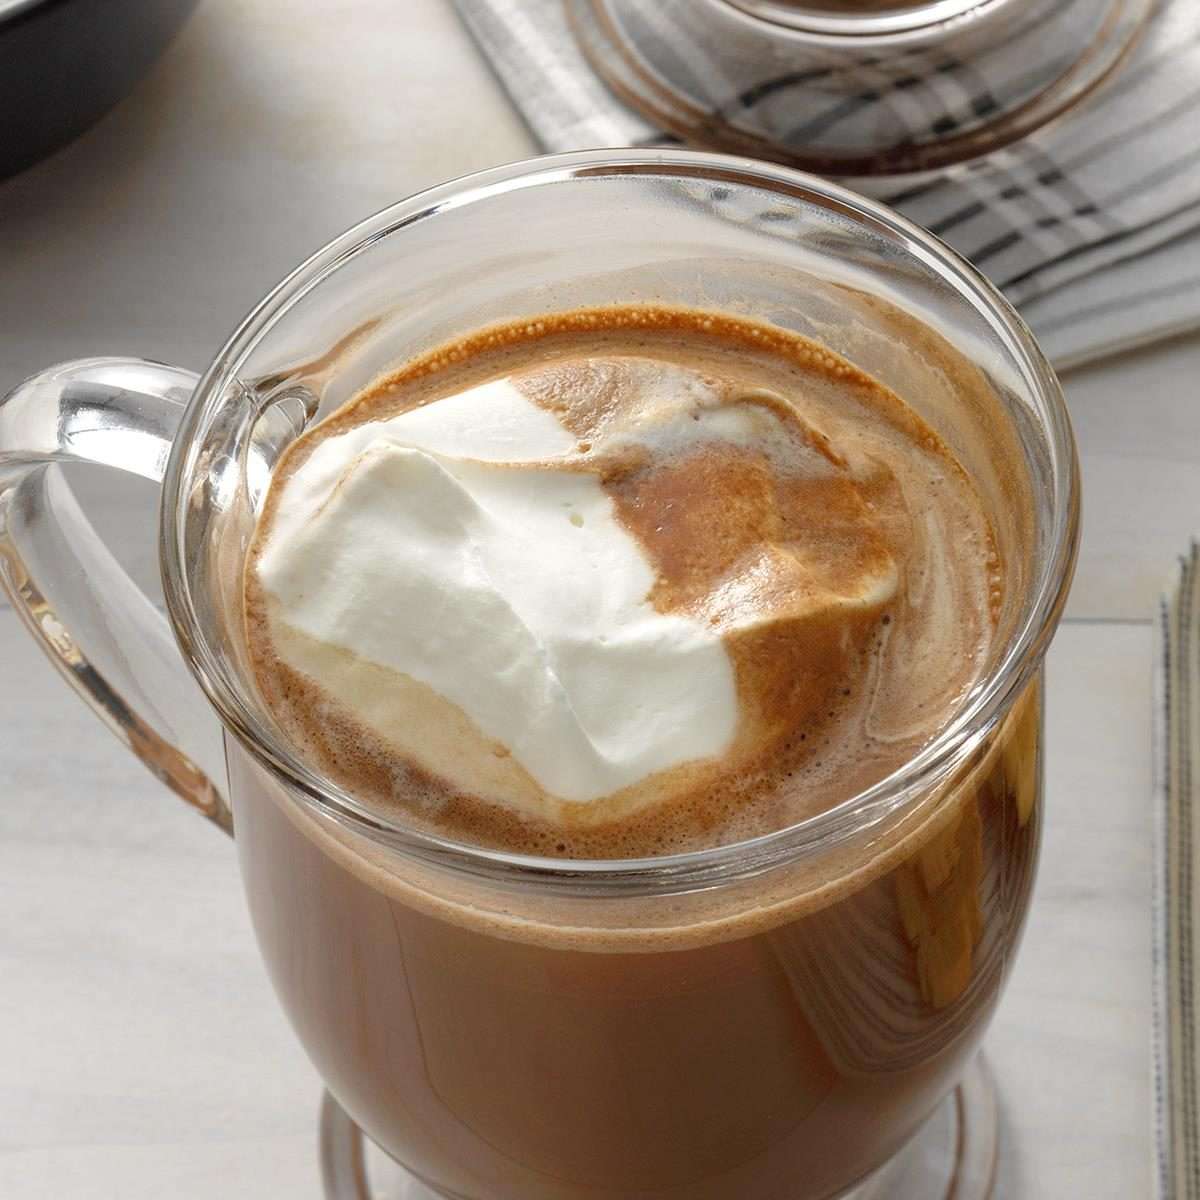 Hazelnut Mocha Coffee Recipe: How to Make It